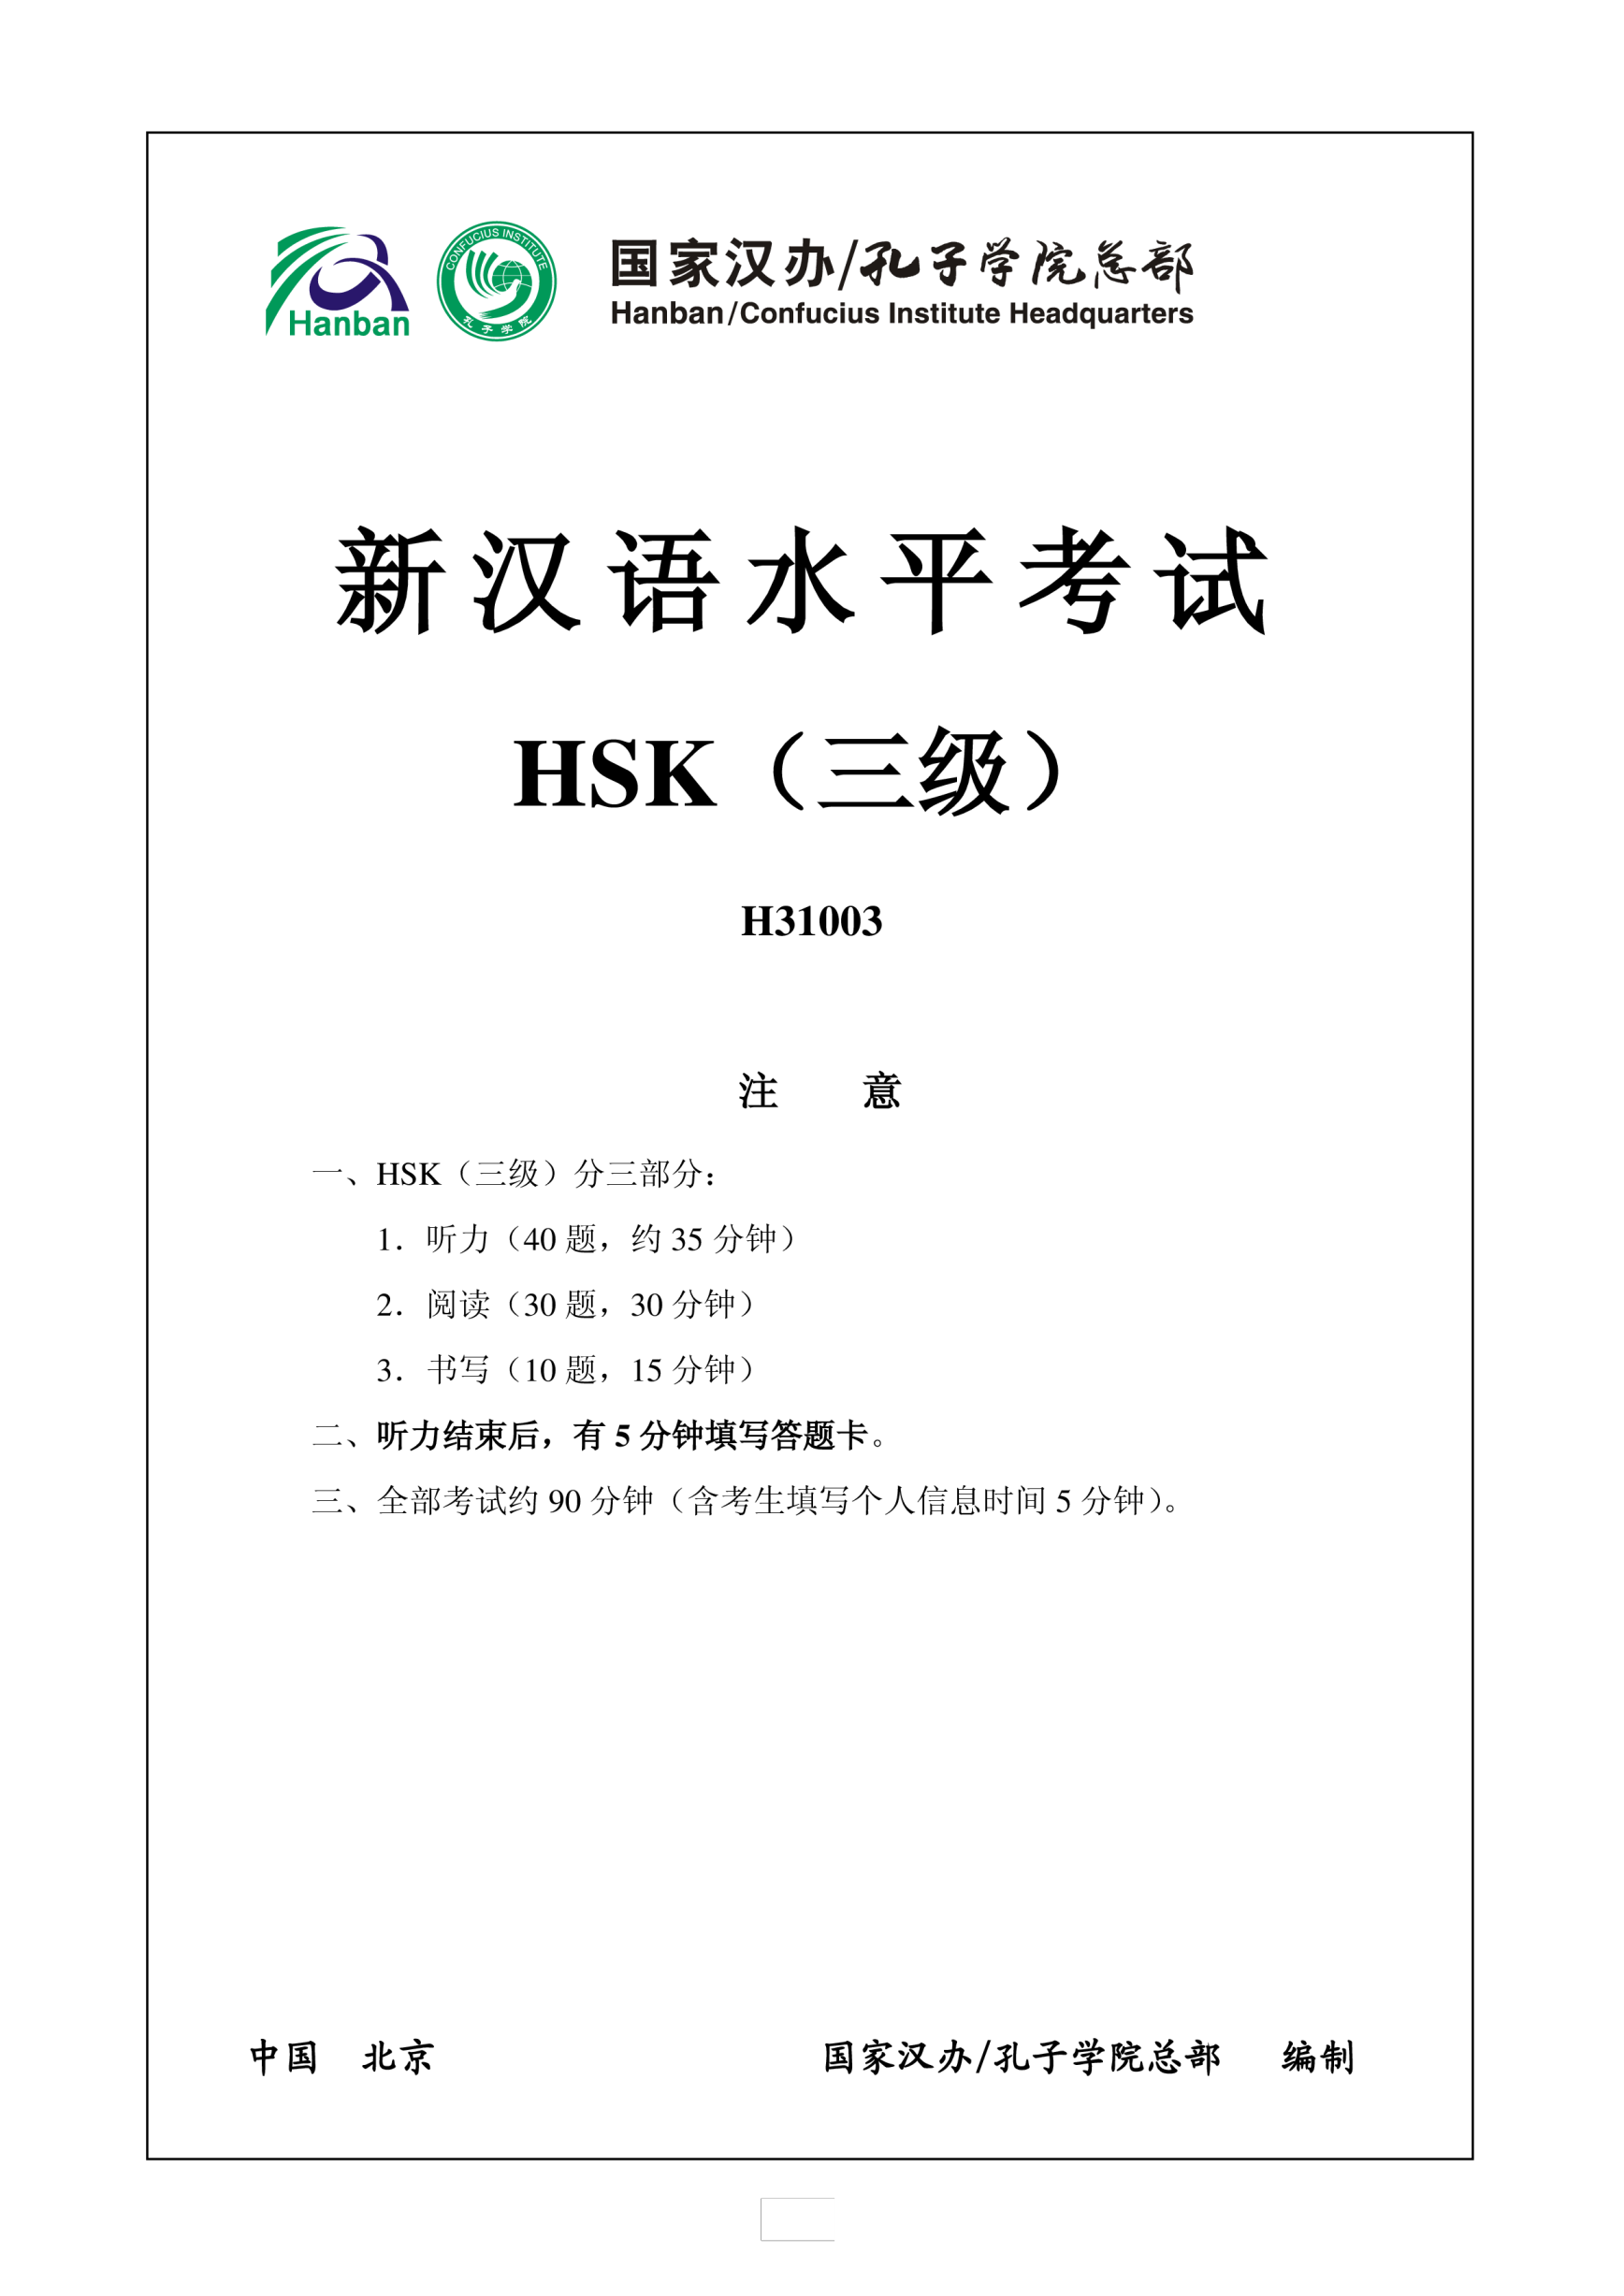 Vorschaubild der VorlageHSK3 Chinese Exam including Answers HSK3 H31003